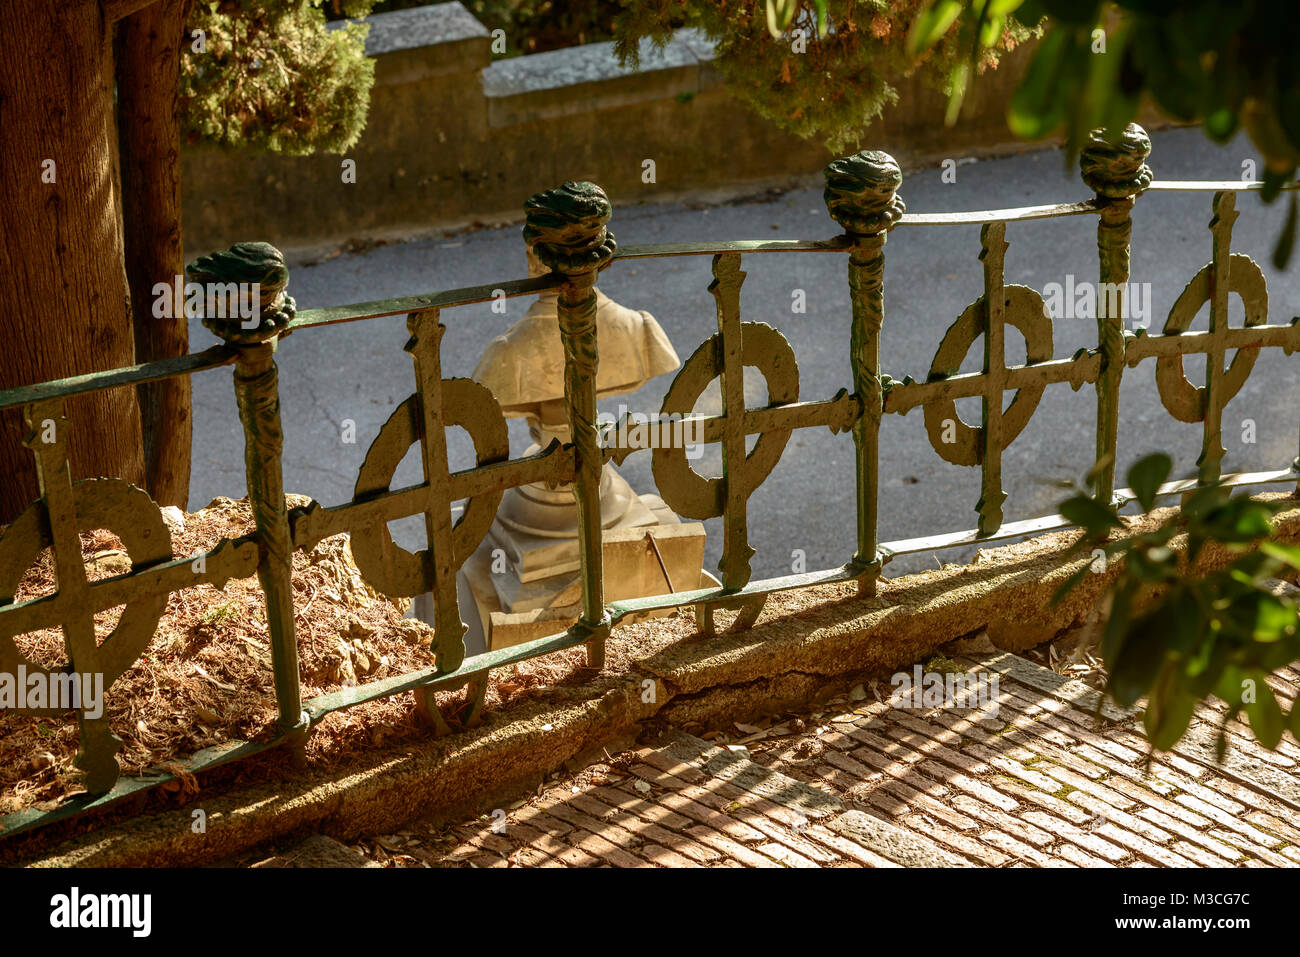 Decorate cancellata in ferro battuto a storico monumentale cimitero di Staglieno in città, girato in condizioni di intensa luce invernale in Genova, liguria, Italy Foto Stock